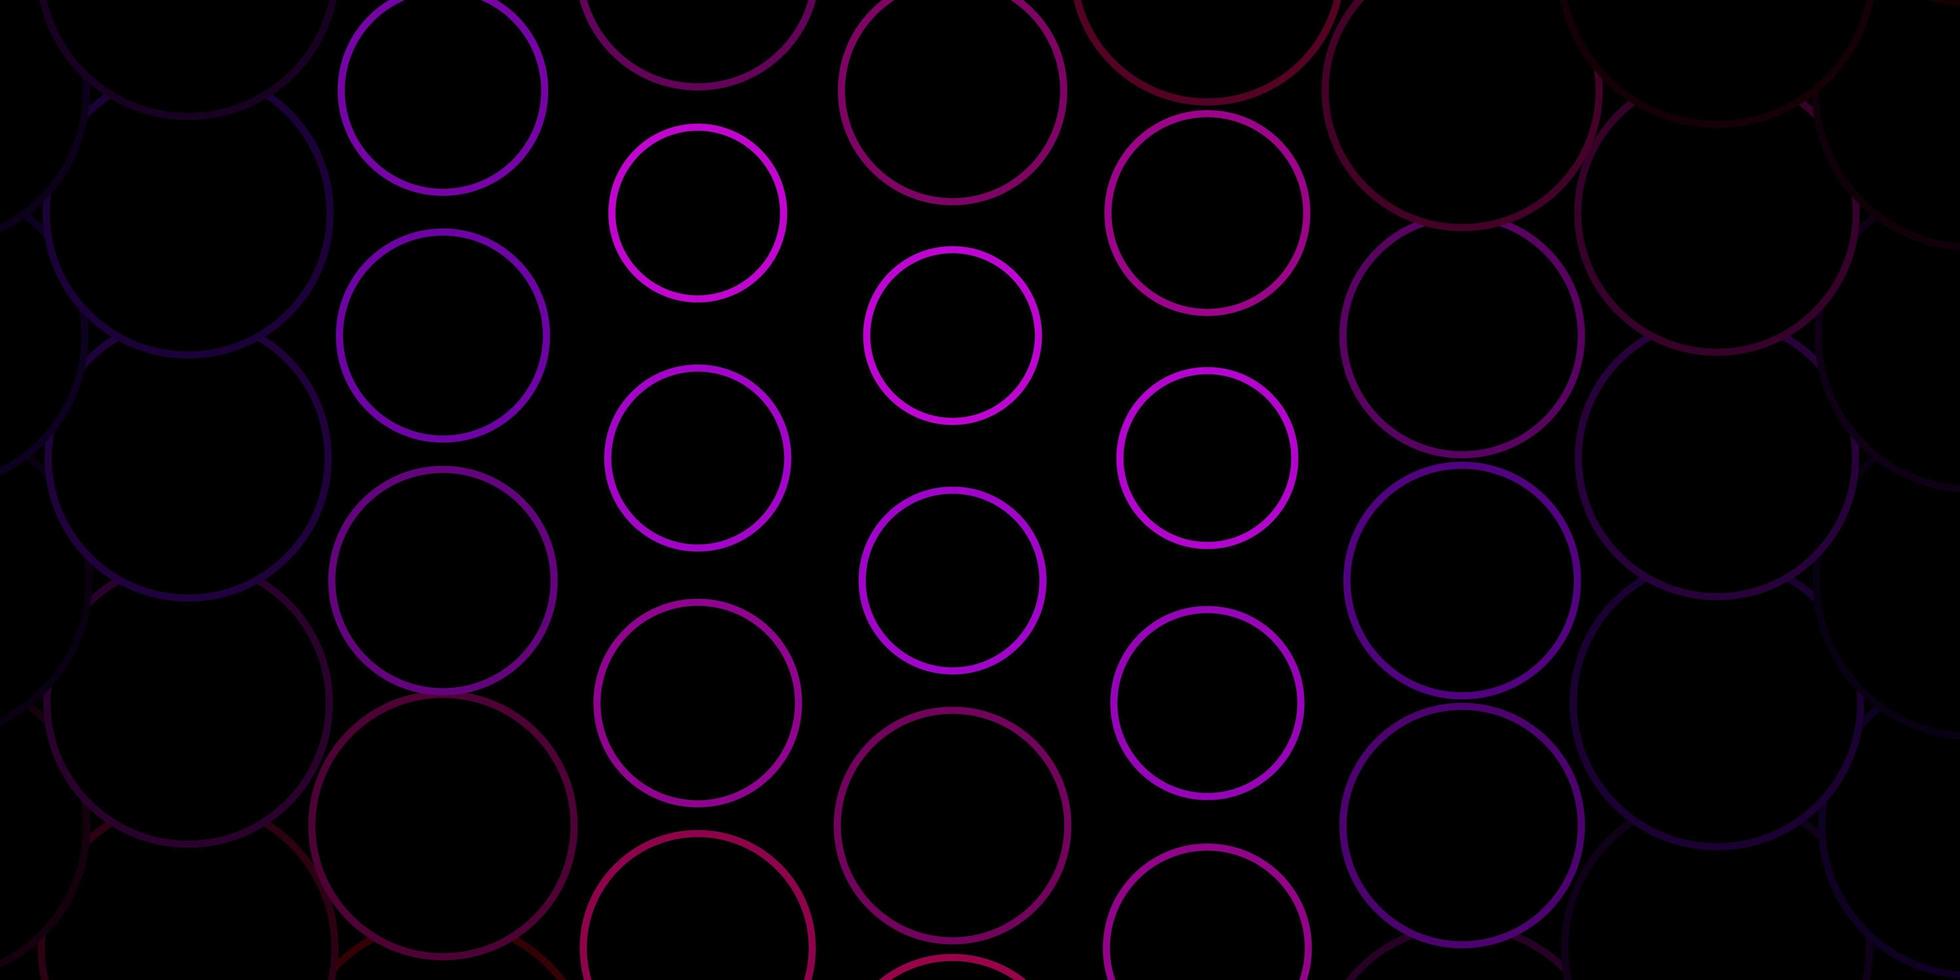 pano de fundo vector azul e vermelho escuro com círculos. ilustração com conjunto de esferas abstratas coloridas brilhantes. design para cartazes, banners.